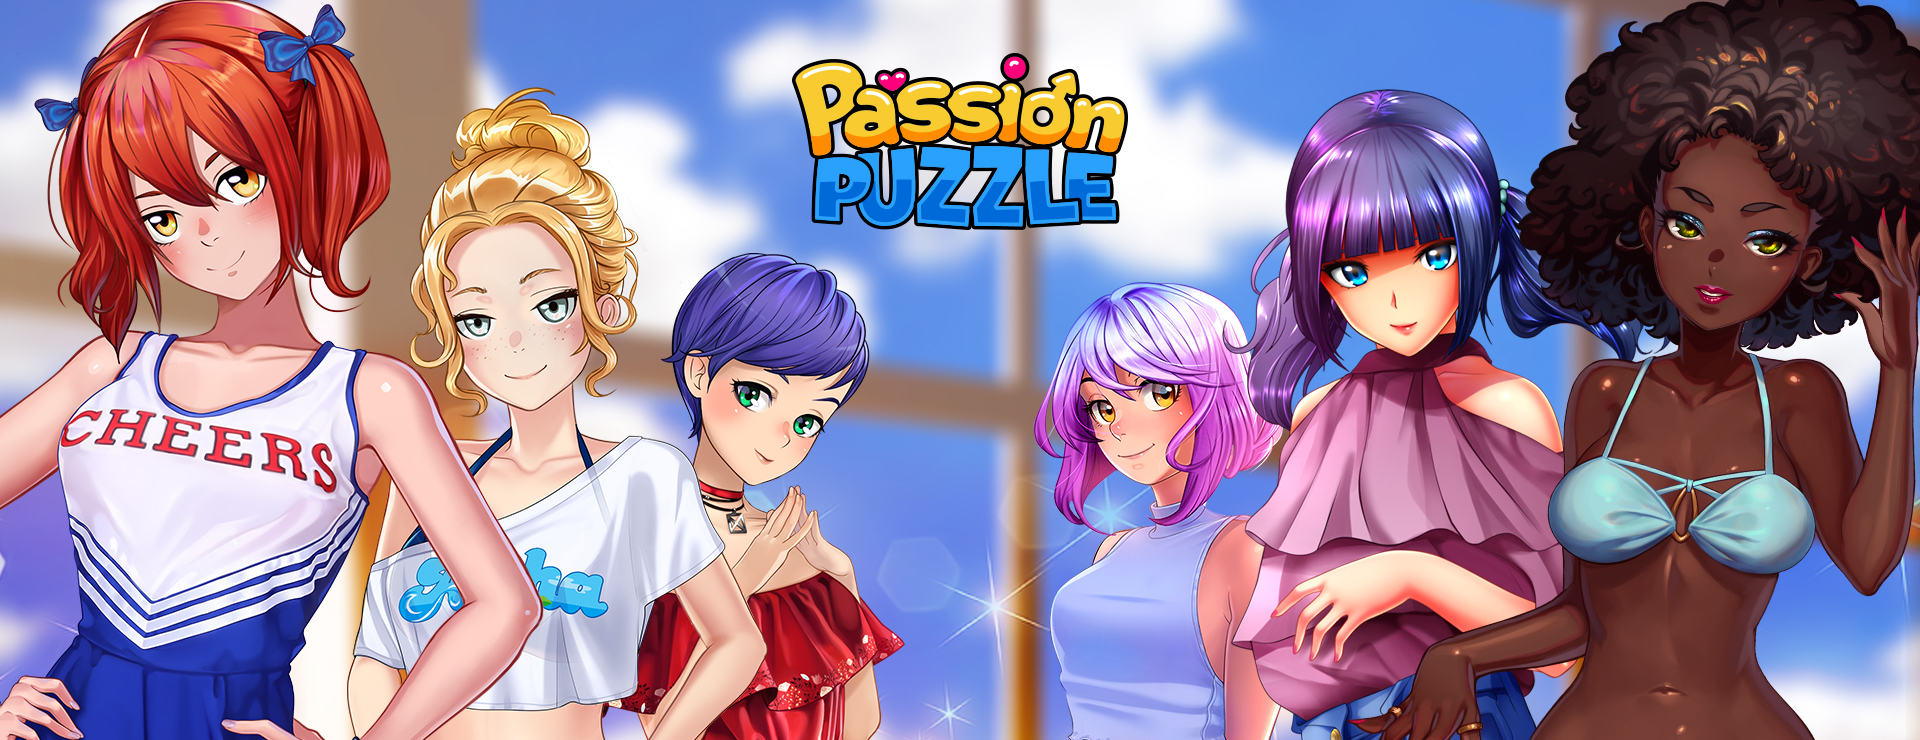 Passion Puzzle - Zwanglos  Spiel